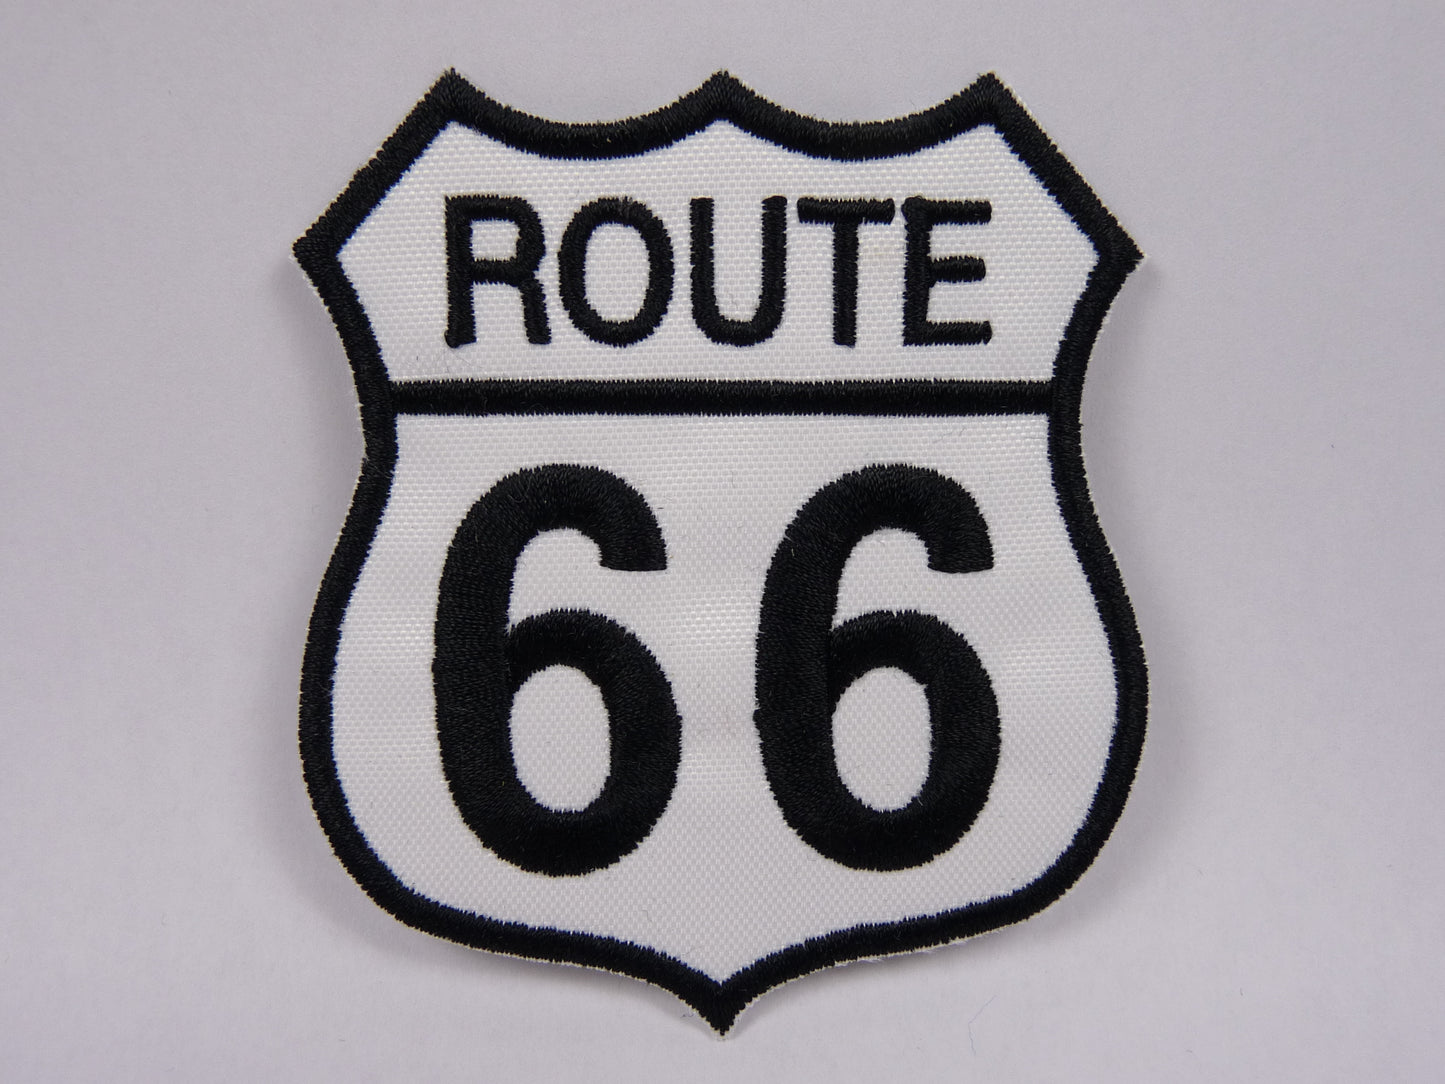 PTC125 Patch brodé thermocollé : logo Route 66 blanc largeur environ 7.5 cm hauteur environ 8.4 cm